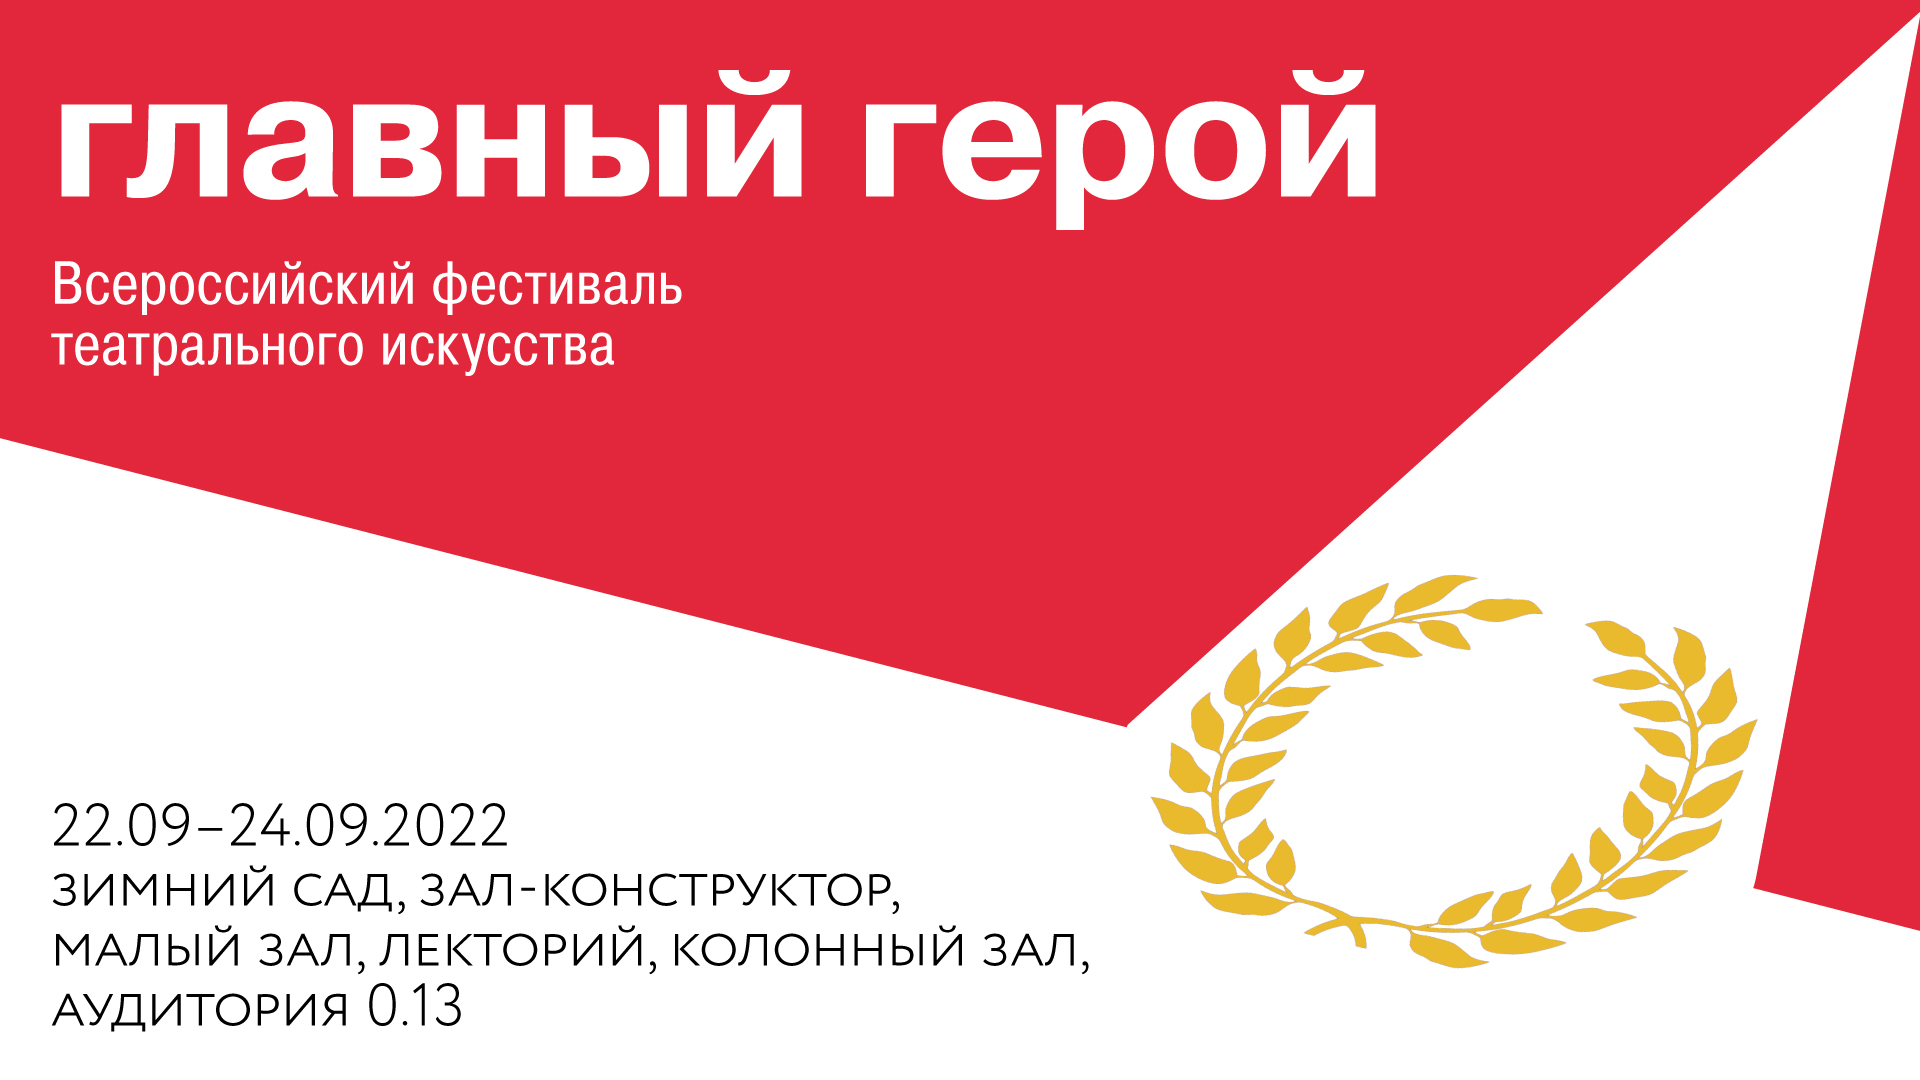 Всероссийский фестиваль театрального искусства «Главный герой»